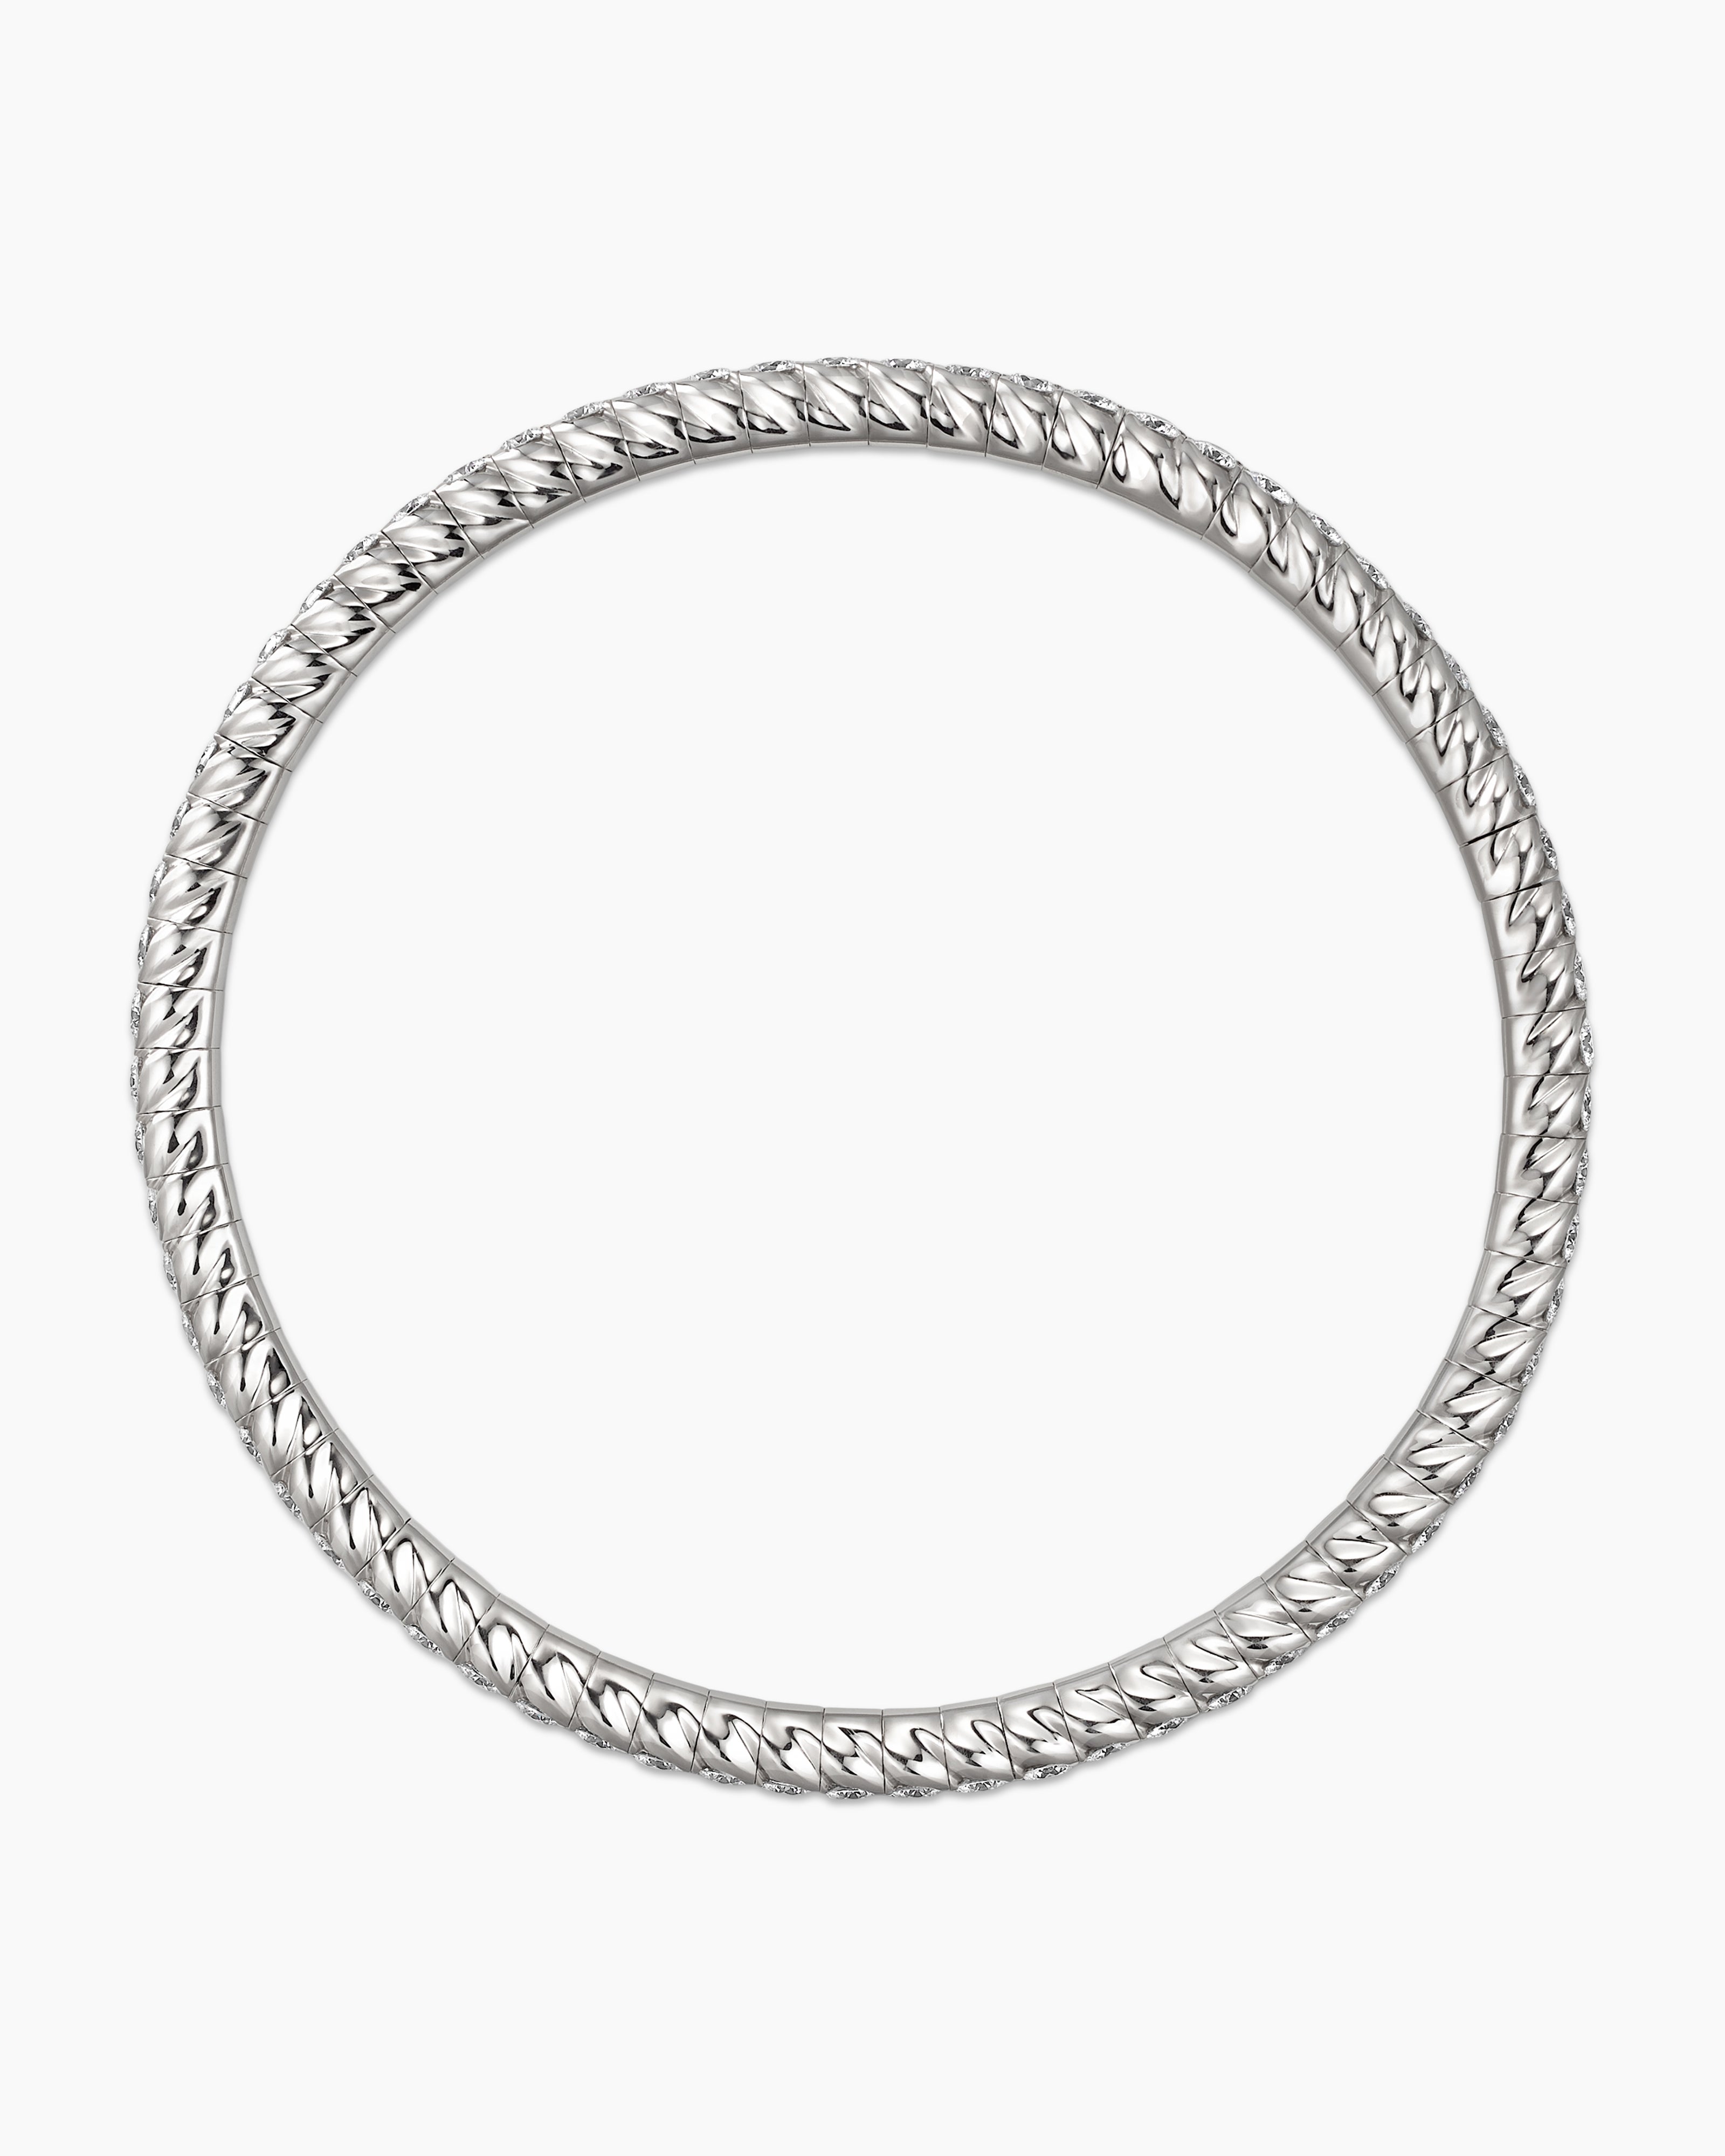 Stainless Steel Bead Bracelet Bracelet Elastic Leather Cord Stacked Women's  Bracelet